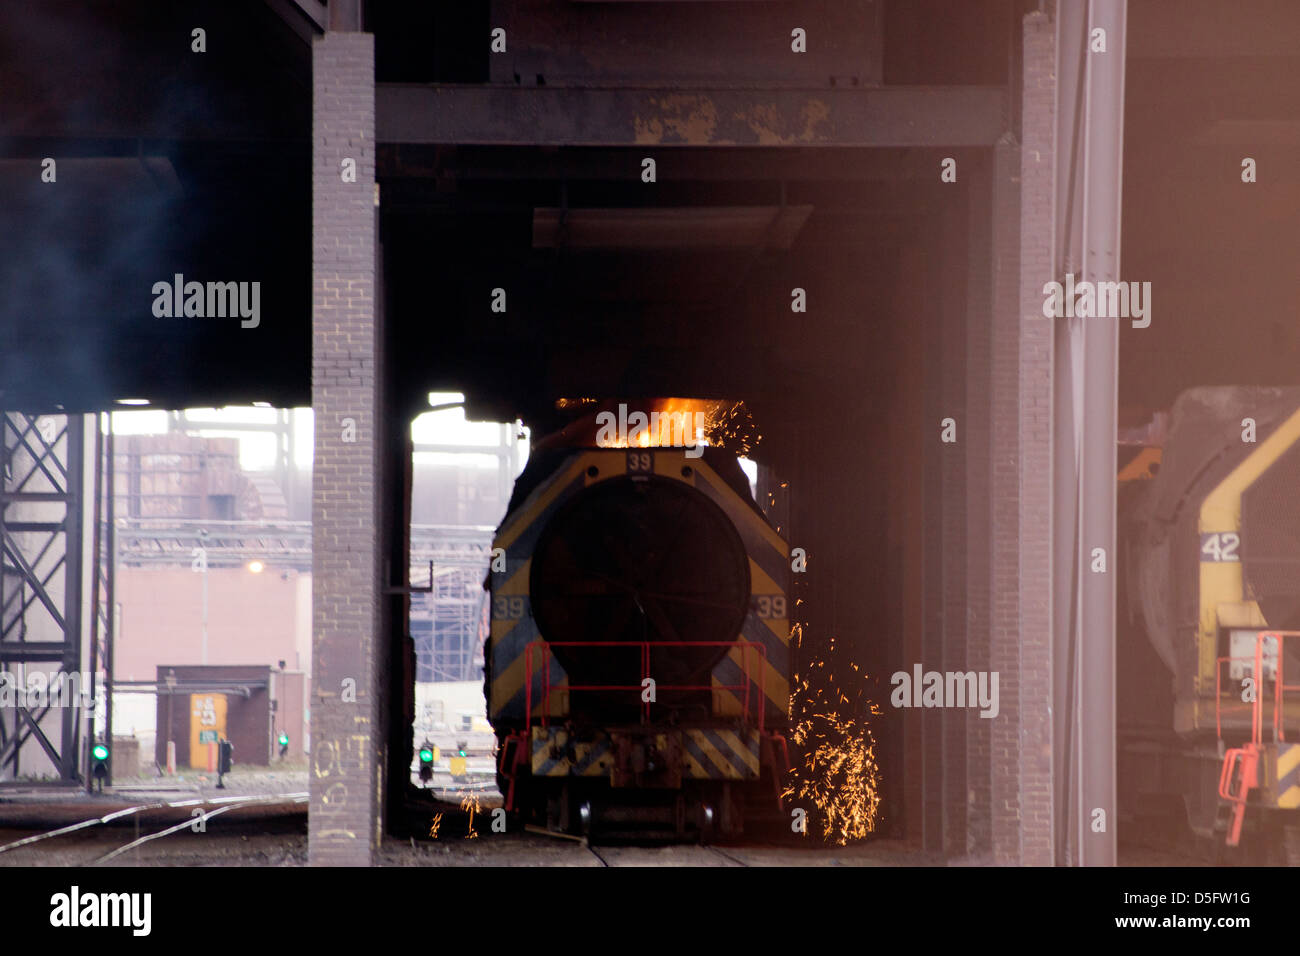 Teesside Steelworks, Sahaviriya. Stock Photo